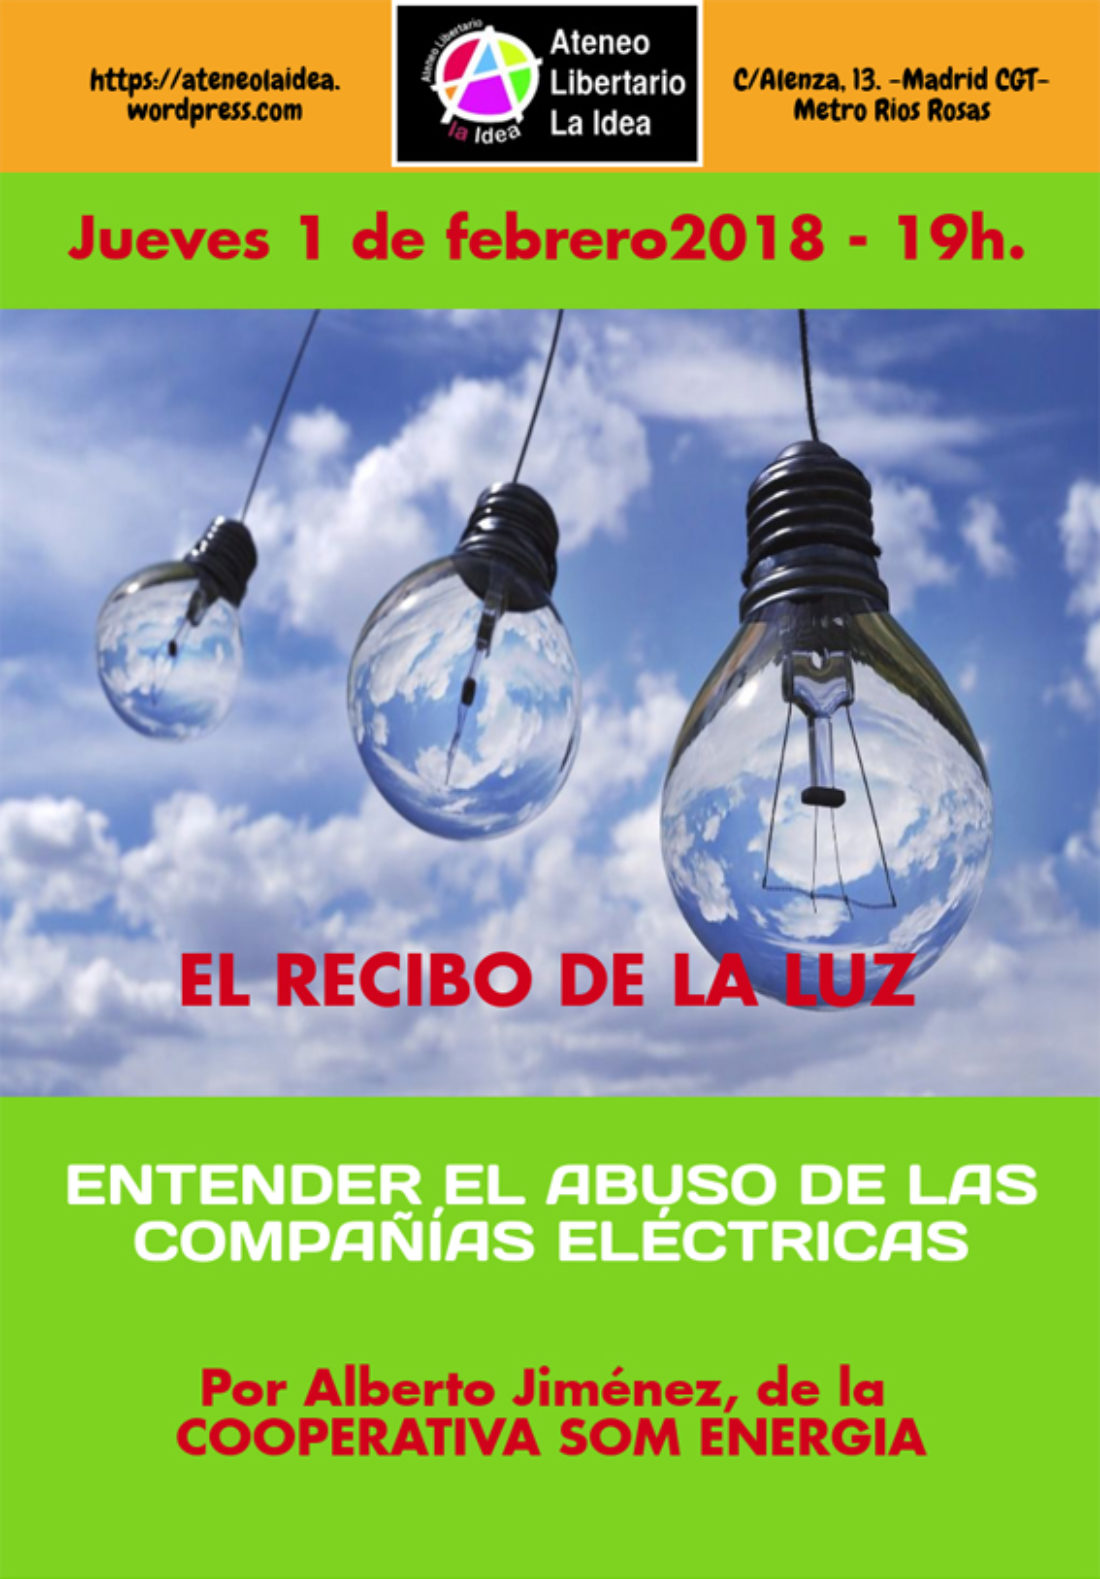 Taller «El recibo de la luz: el abuso de las compañías eléctricas» en Ateneo Libertario La Idea